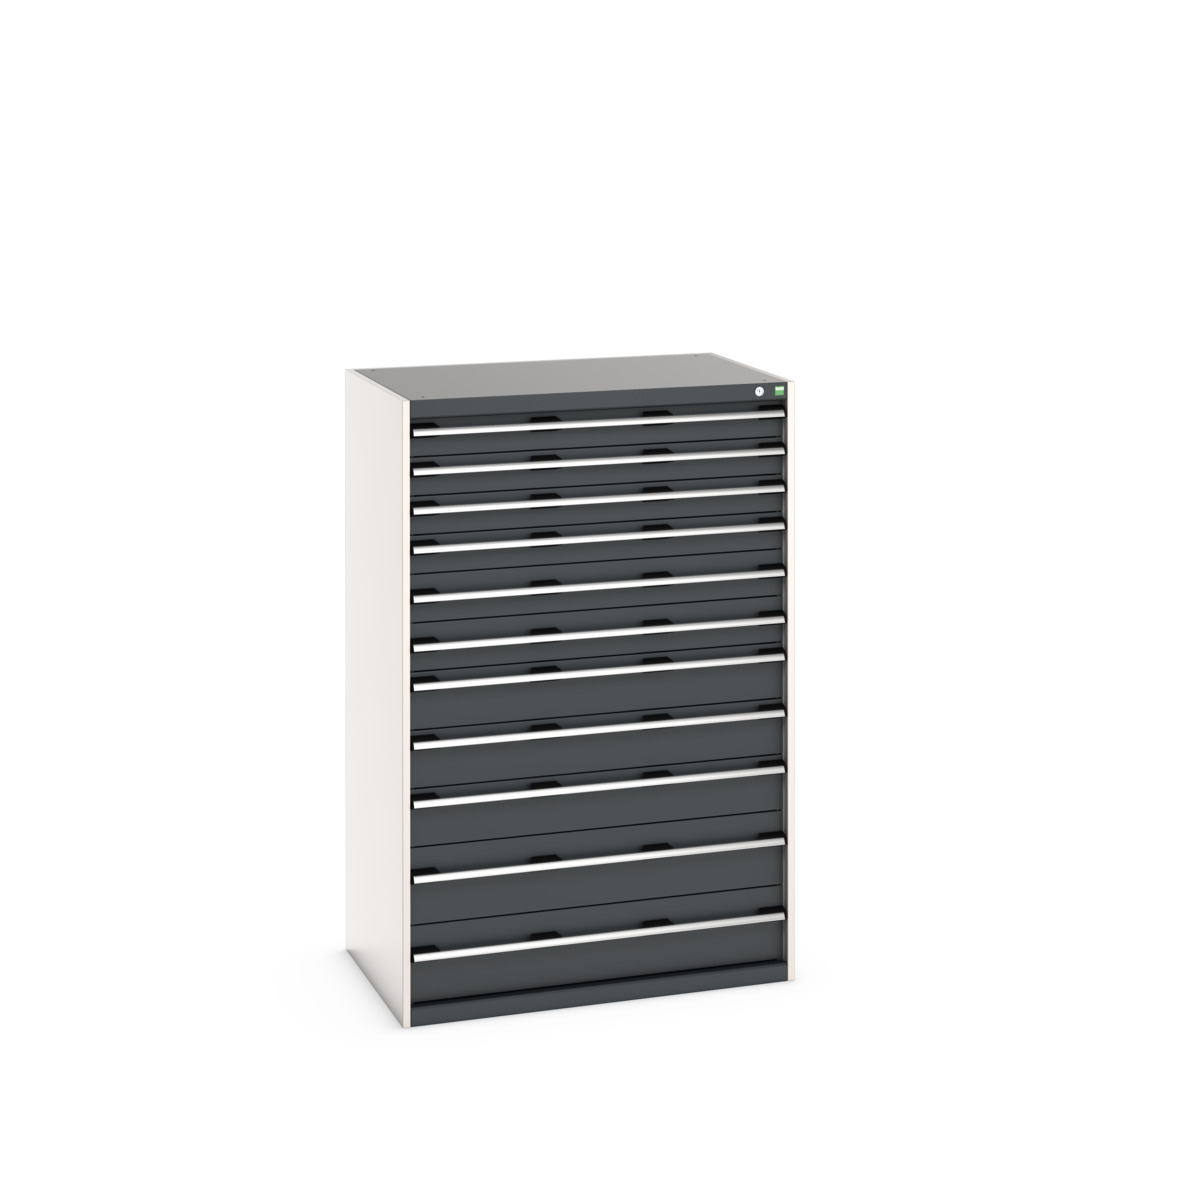 40029037.19V - cubio drawer cabinet